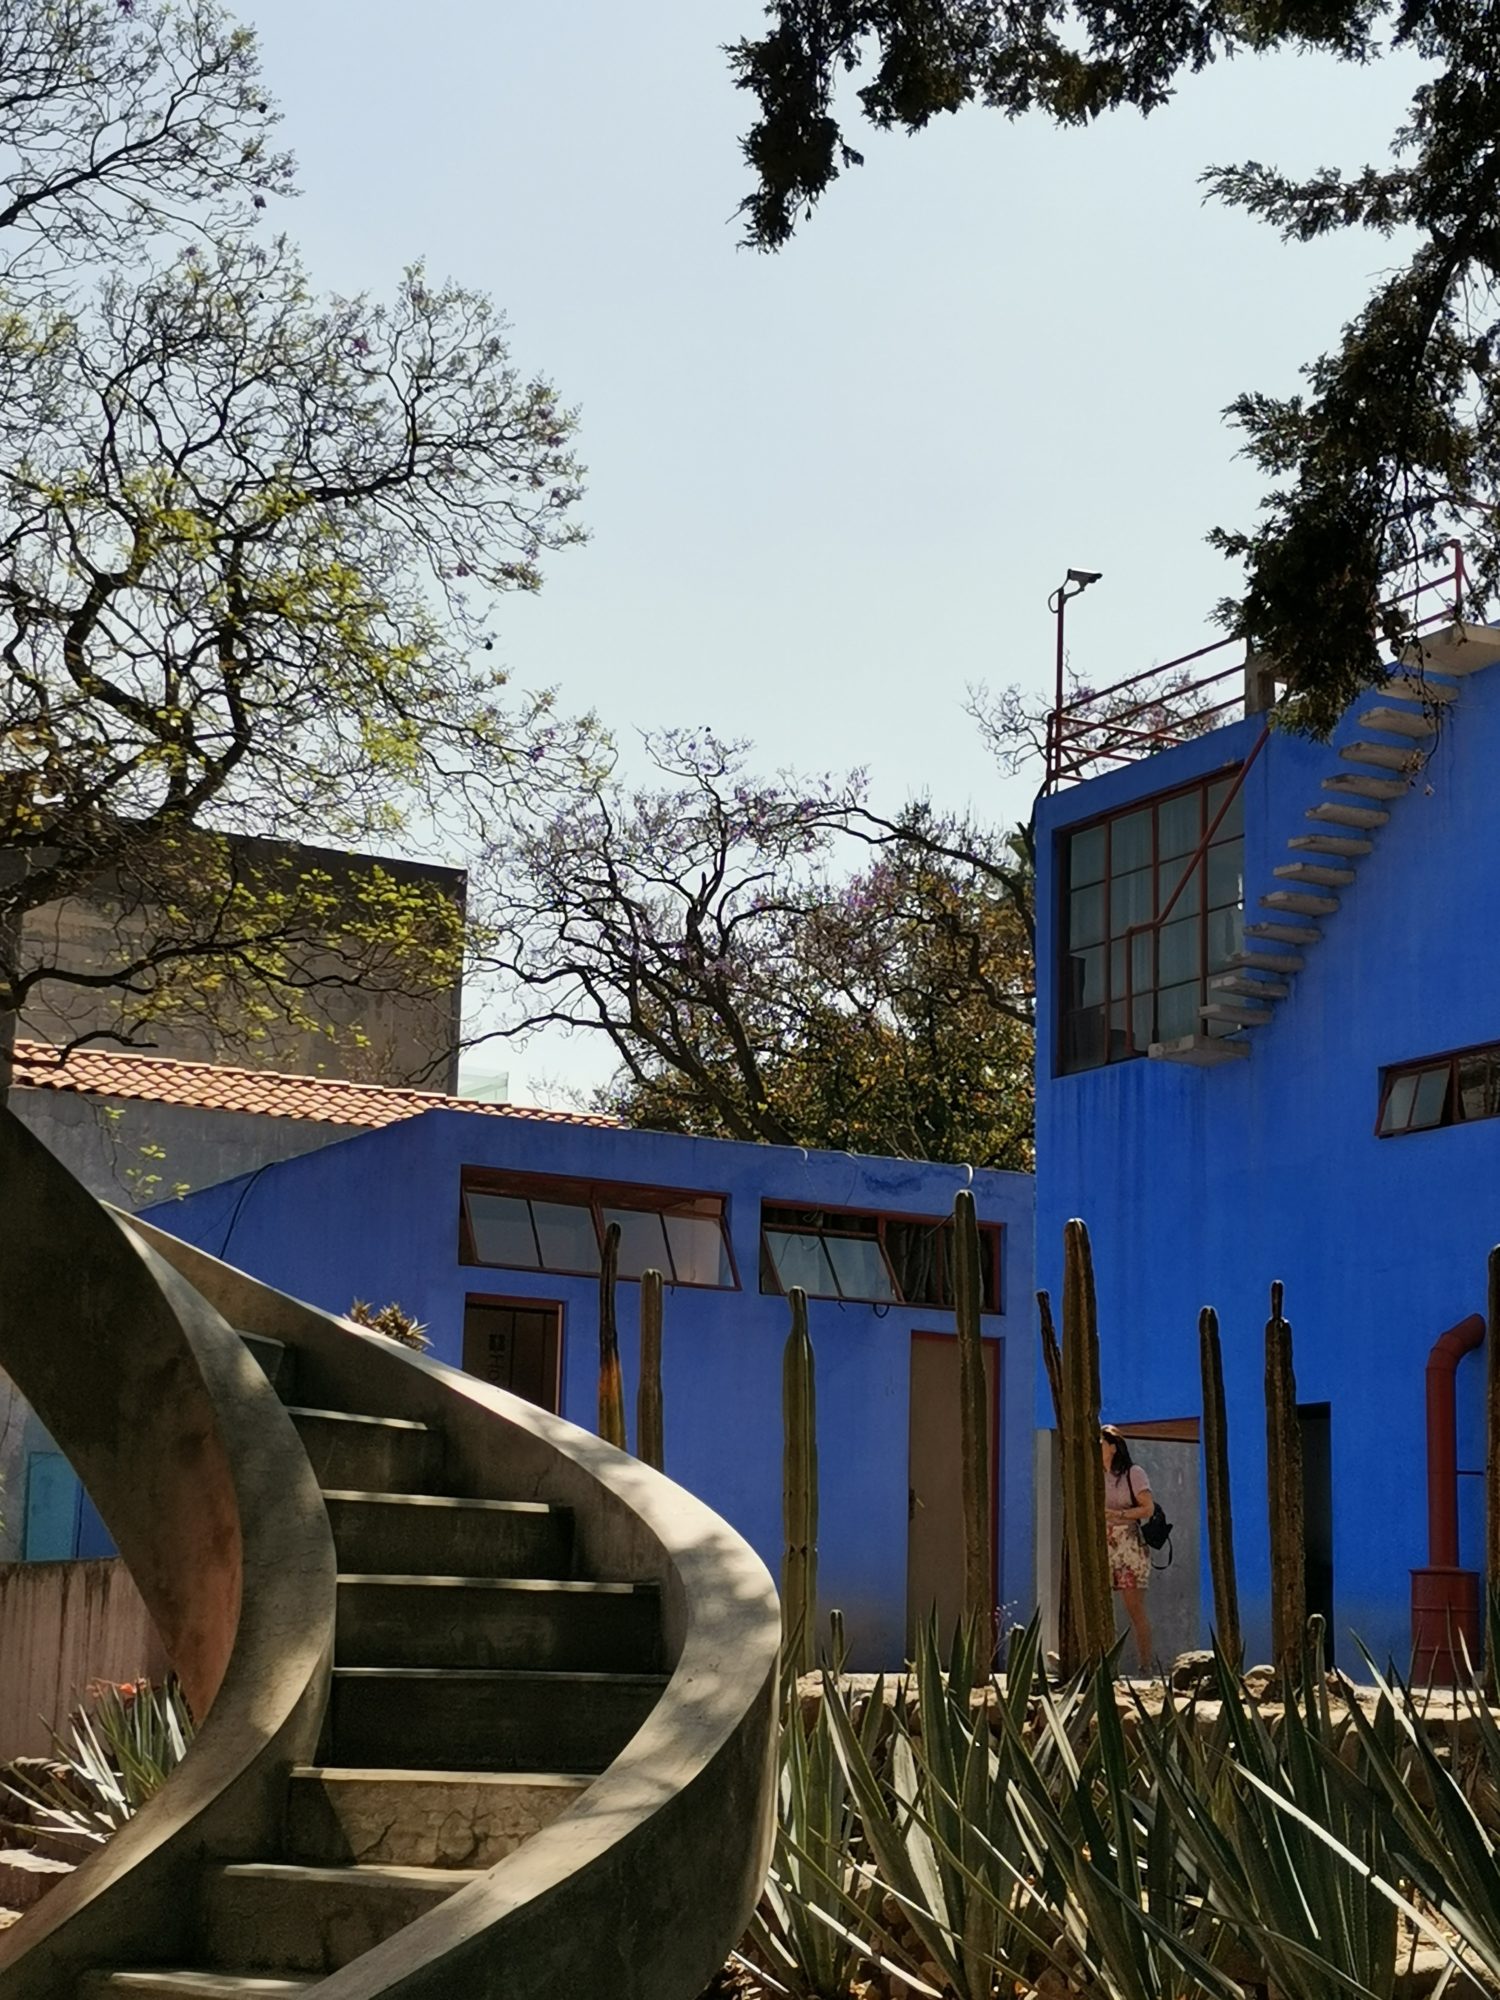 Die Casa Azul in Mexico – das authentische Frida-Kahlo-Museum